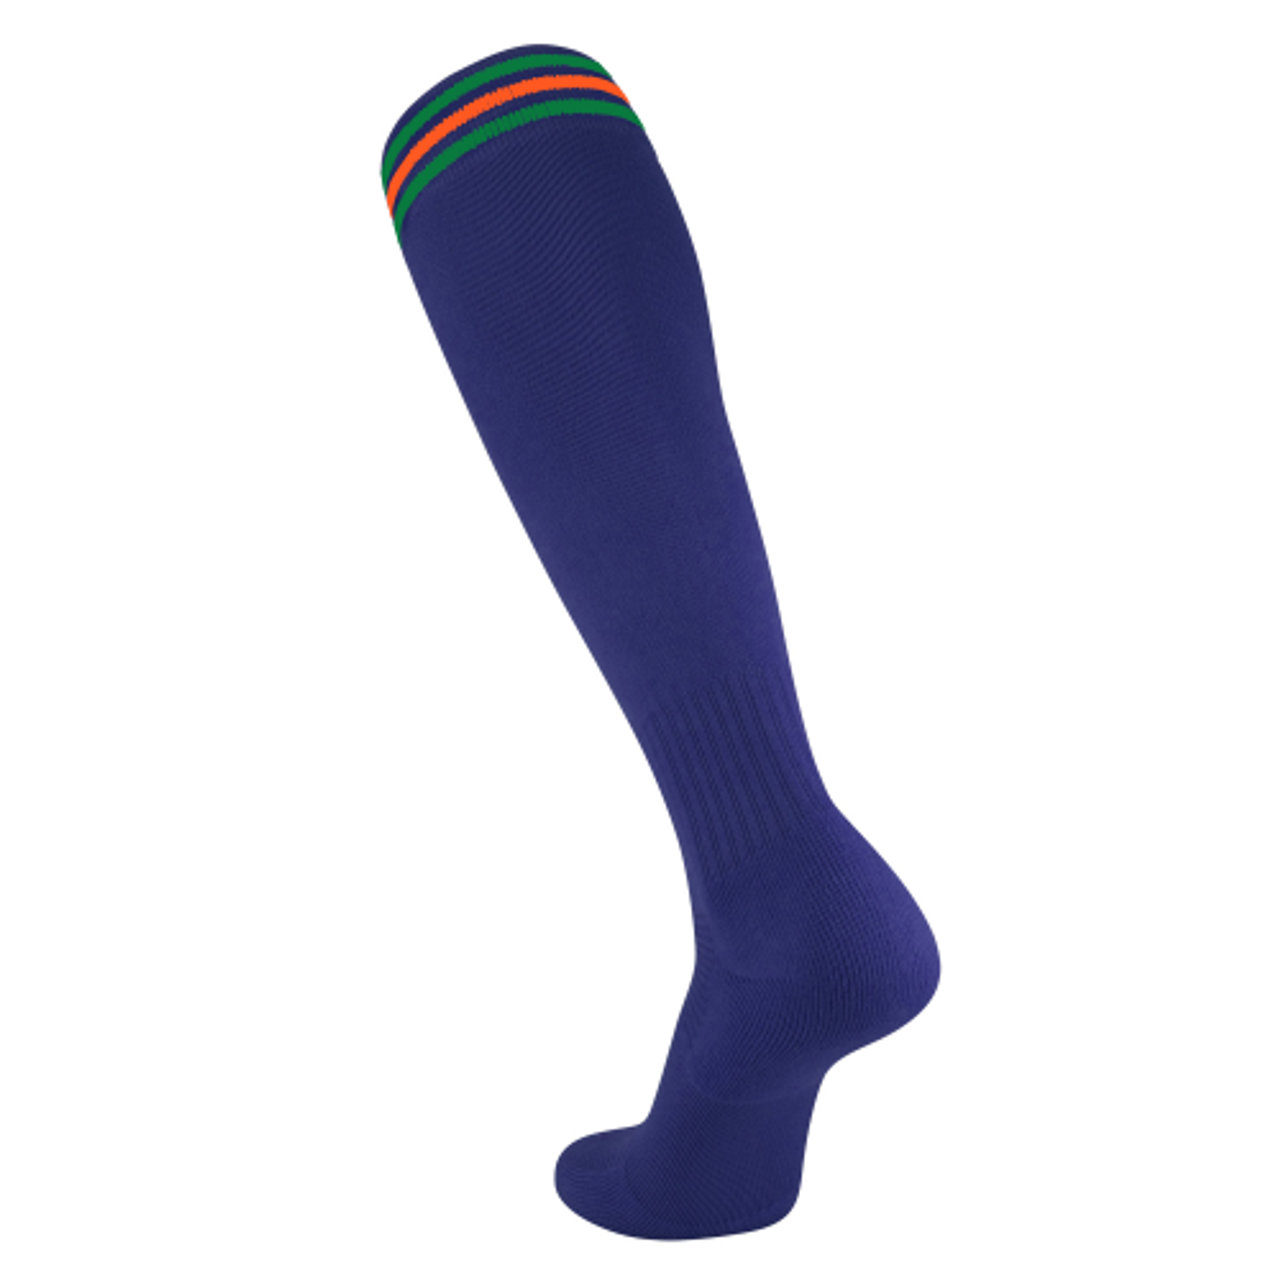 Navy/Orange/Green 3-Stripe Socks